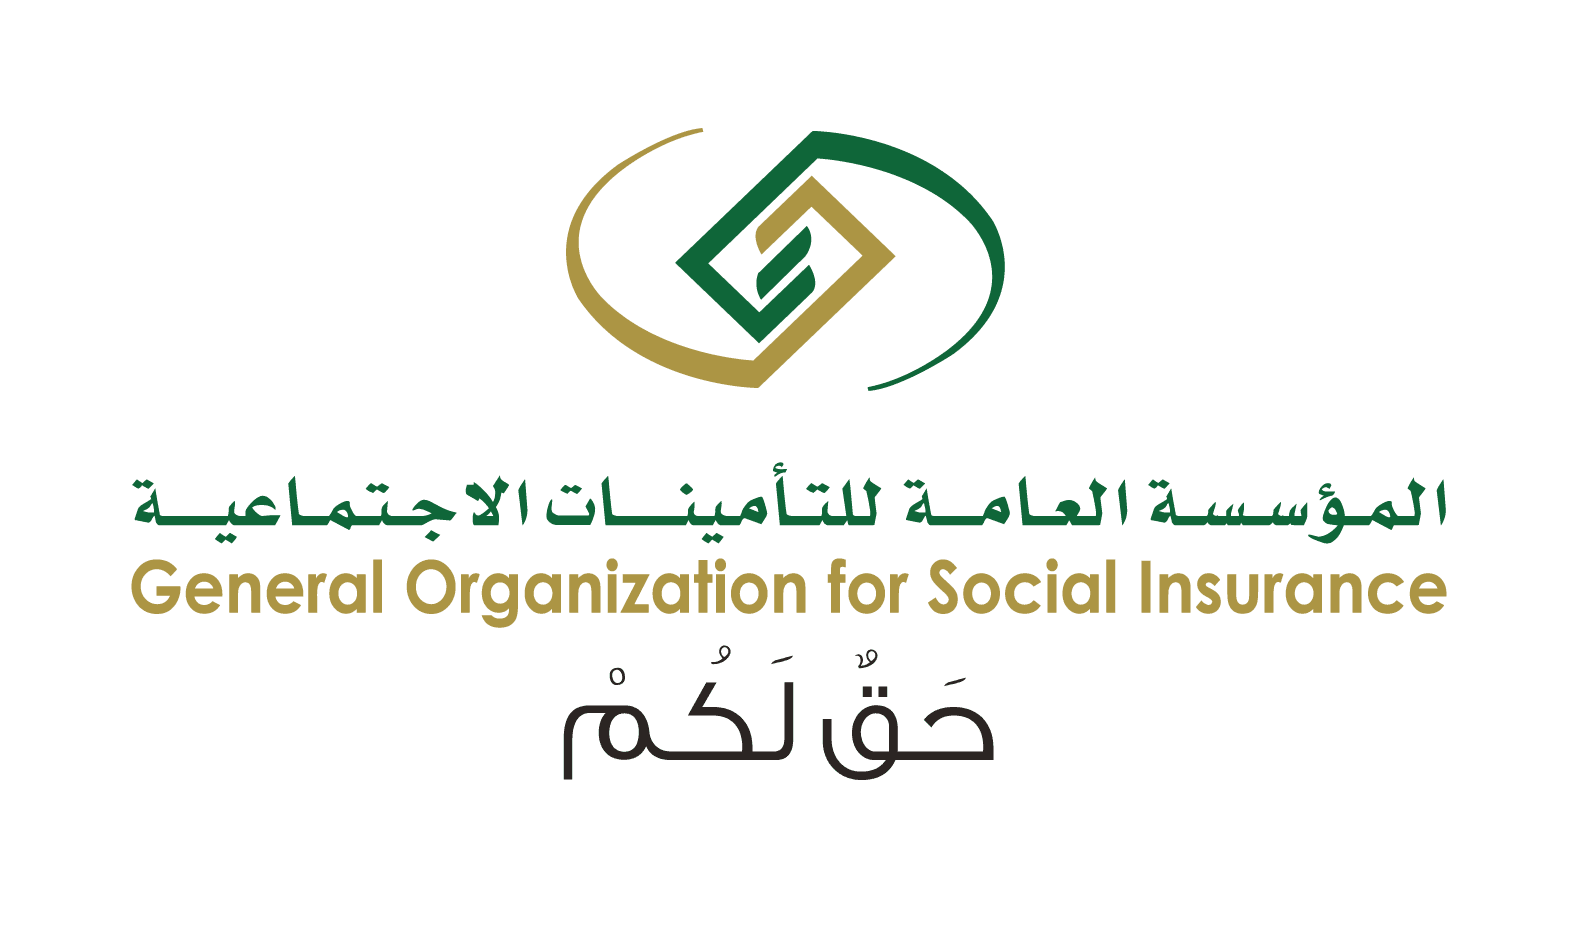 وزارة التأمينات والشؤون الاجتماعية ونبذة عن الوزارة